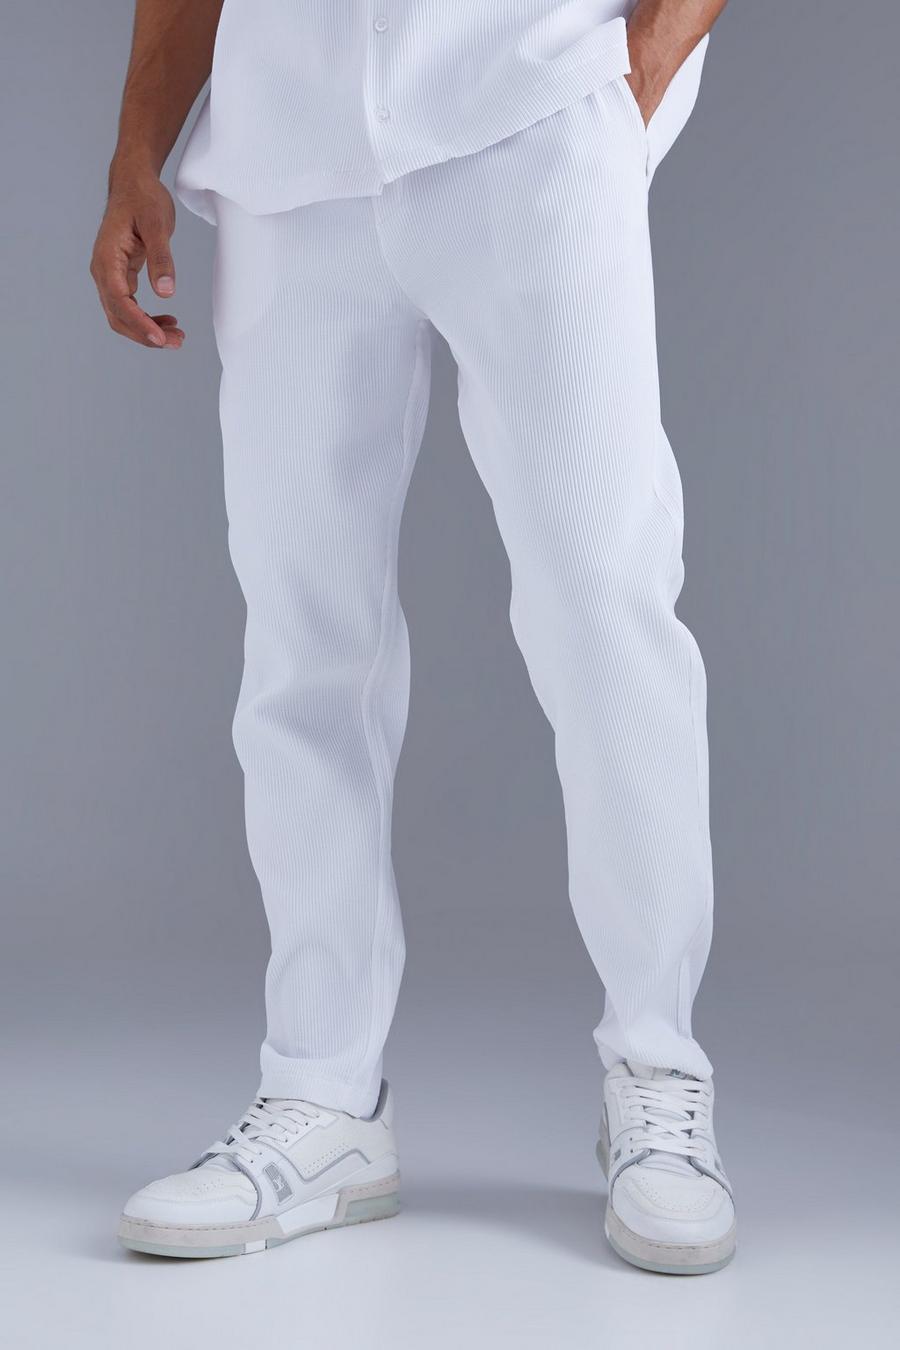 Pantalon court plissé, White